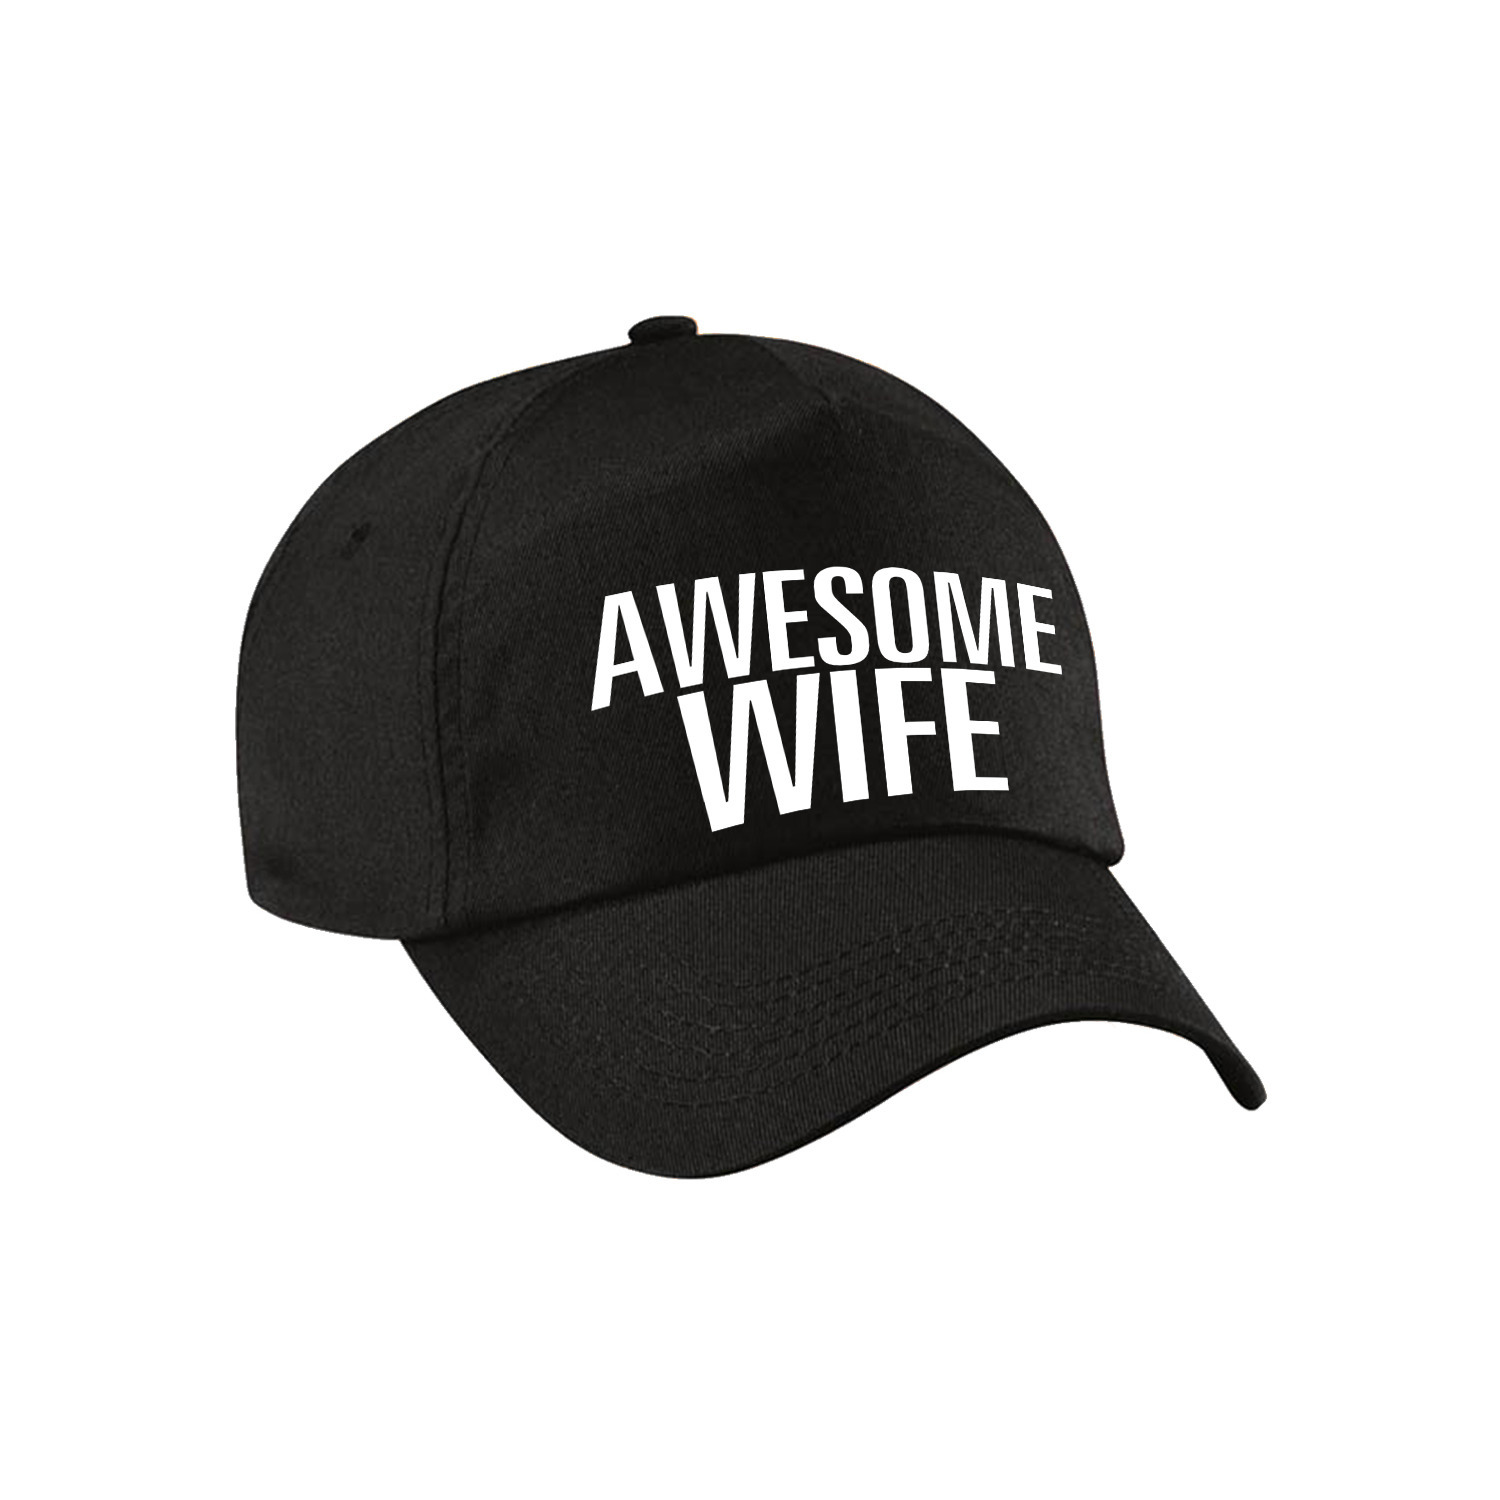 Awesome wife pet - cap voor echtgenote - vriendin zwart voor dames